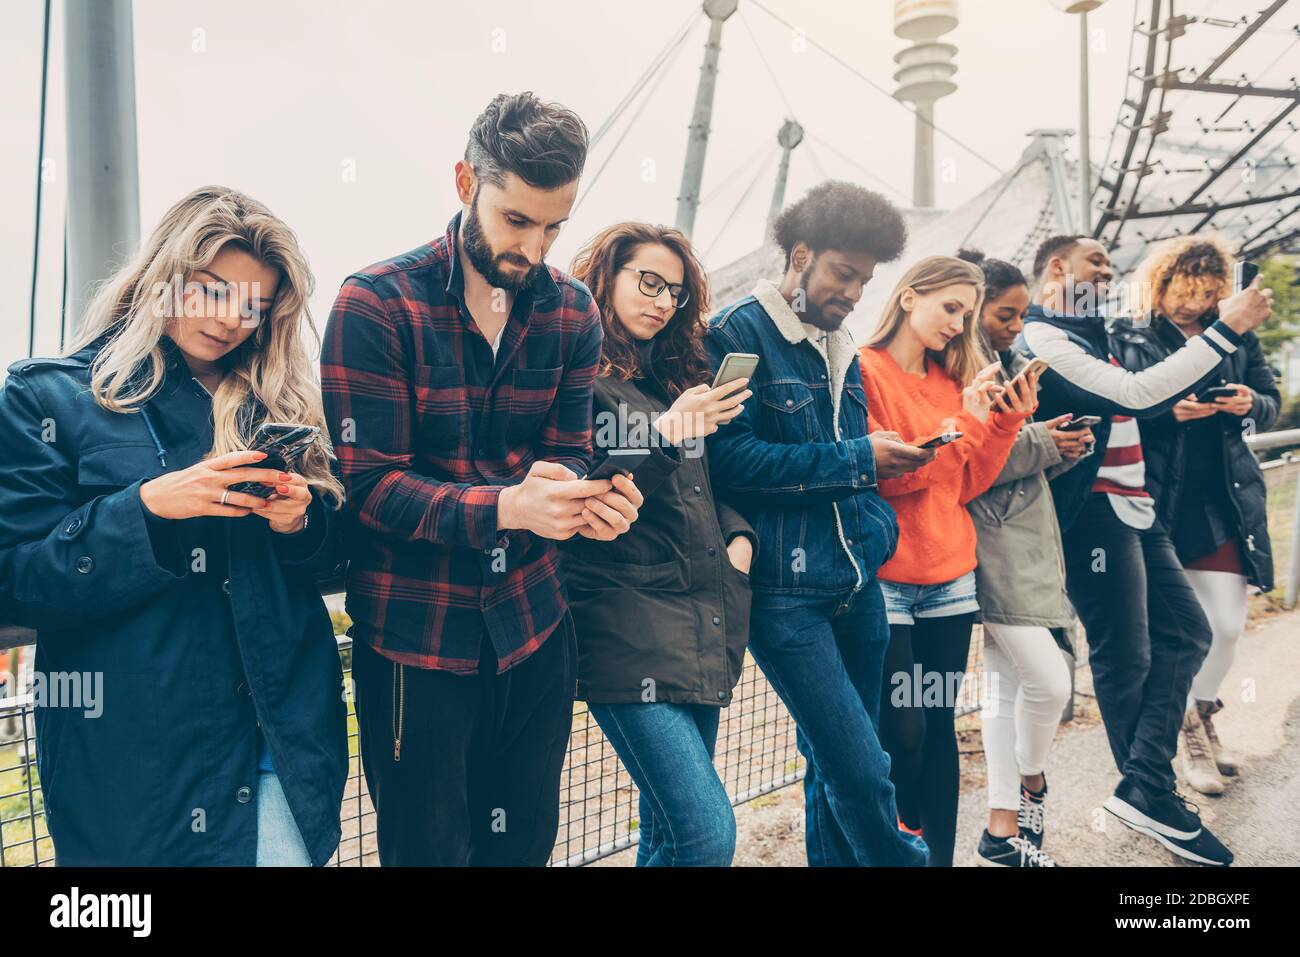 Eine Gruppe junger Menschen, die auf ihr Telefon starren und andere Formen des sozialen Kontakts vermeiden Stockfoto